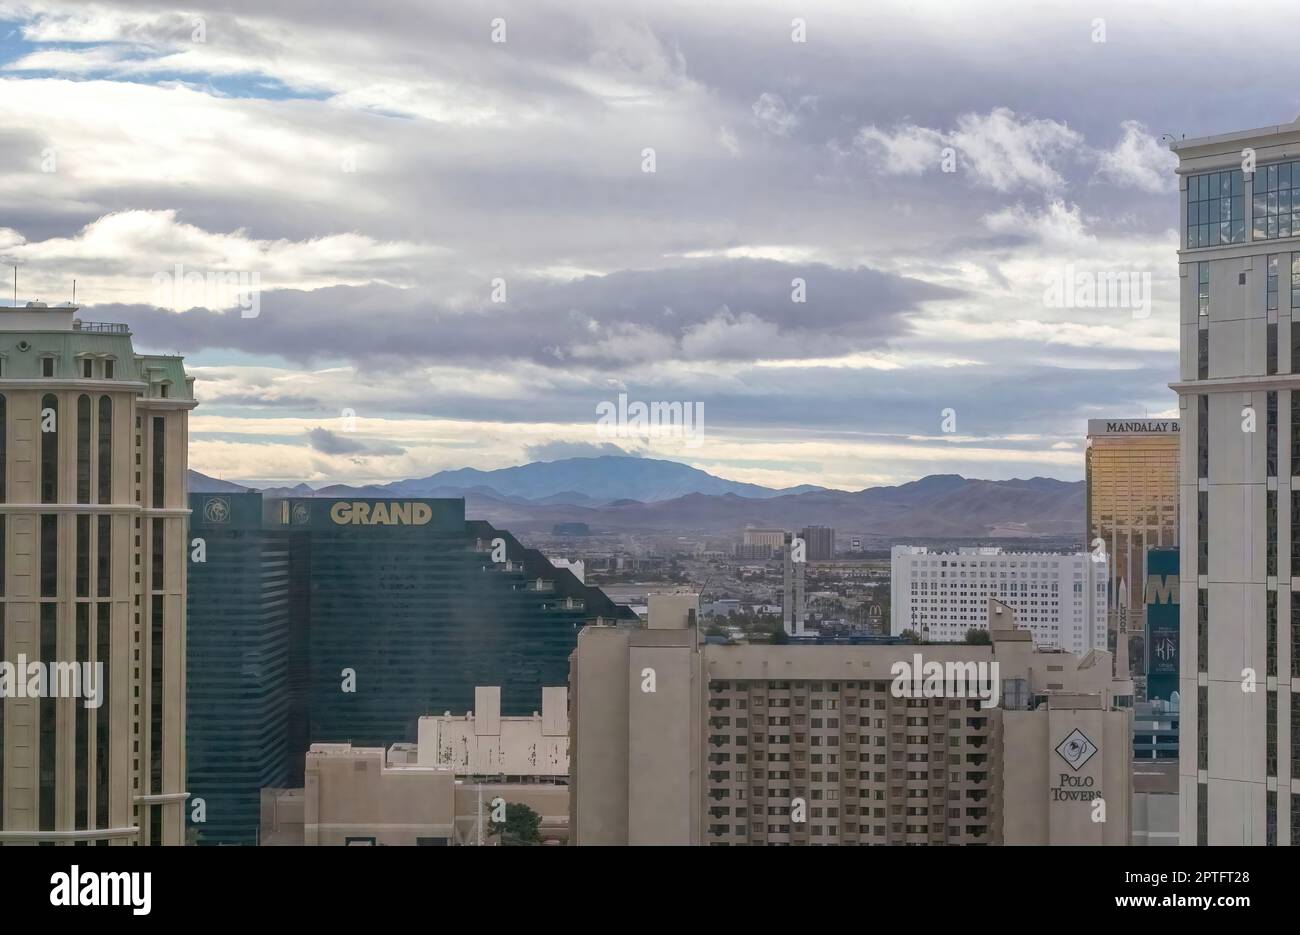 Downtown Grand Hotel und Casino und Hilton Vacation Club Polo Towers mit den Bergen in der Ferne; in Las Vegas, Nevada USA. Stockfoto